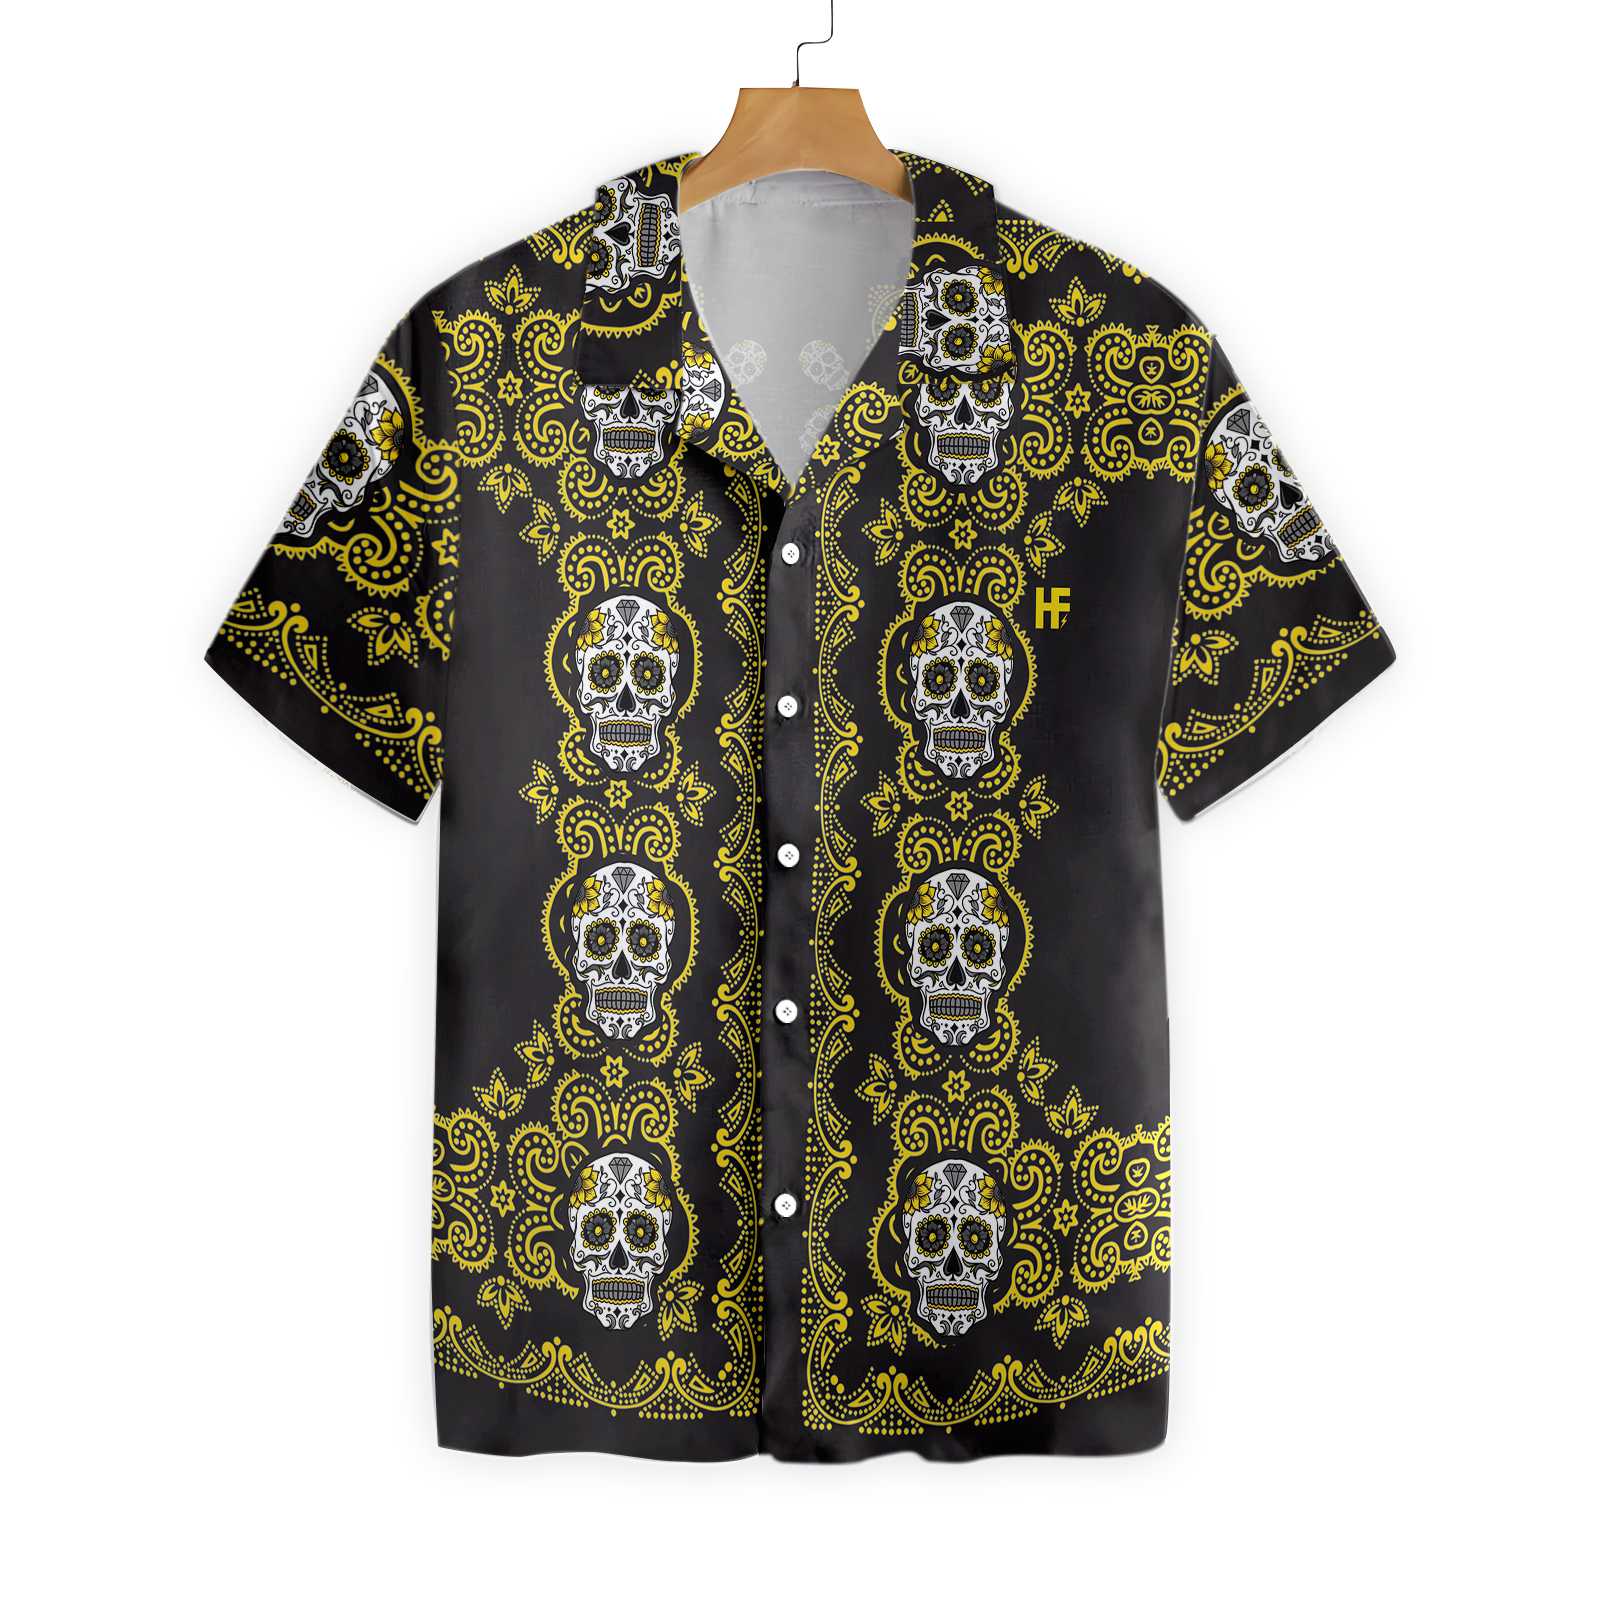 Yellow Sugar Skull Hawaiian Shirt